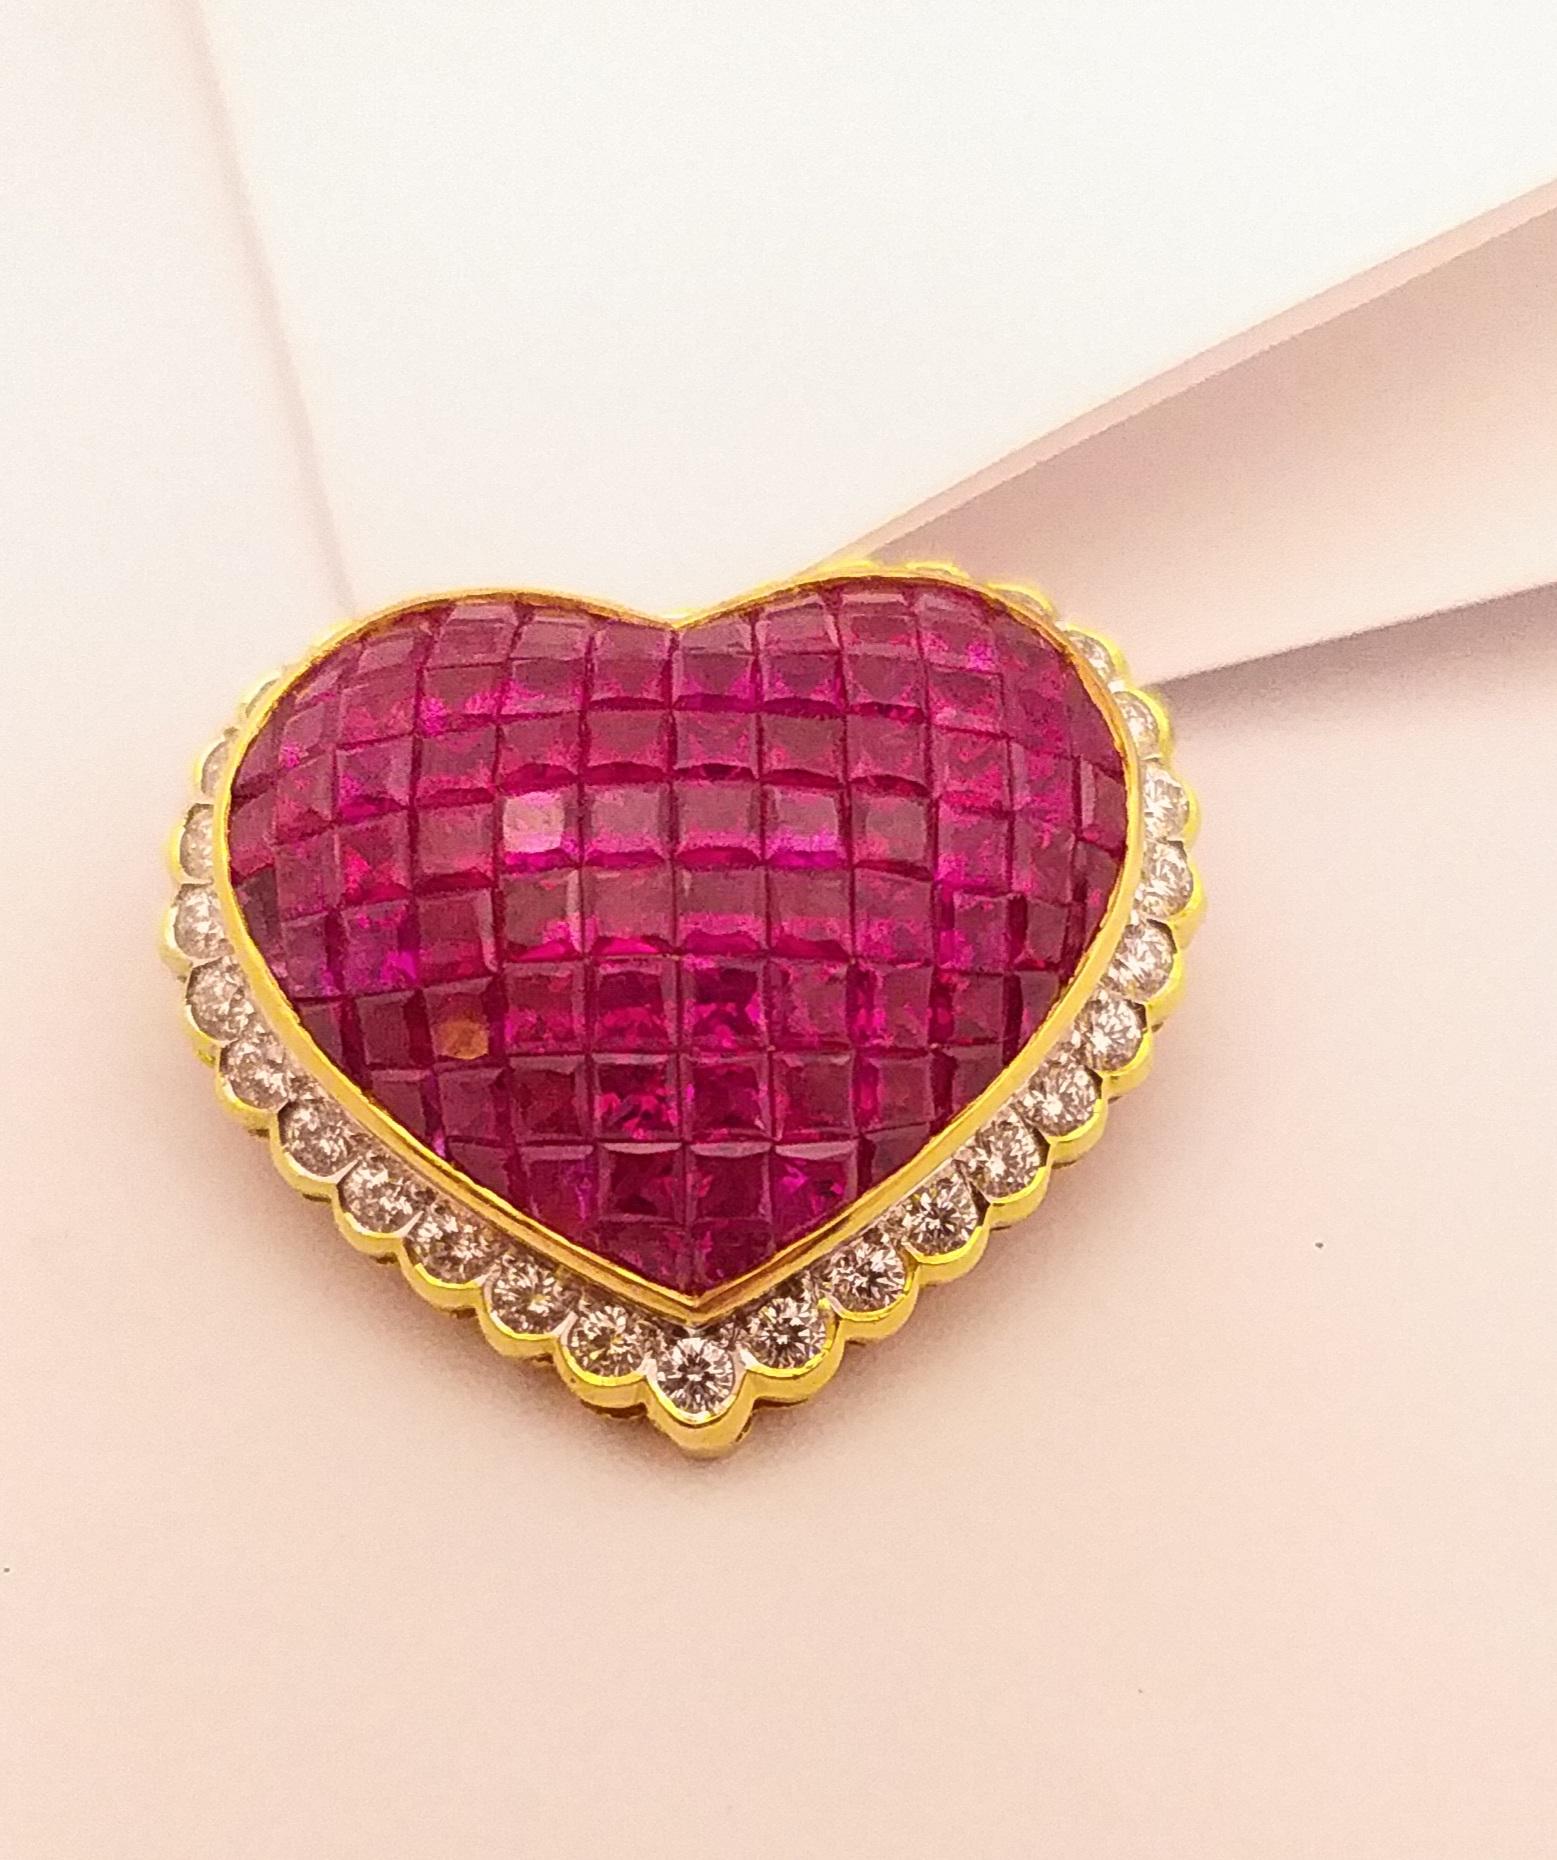 Women's Ruby with Diamond Heart Brooch/Pendant Set in 18 Karat Gold Settings